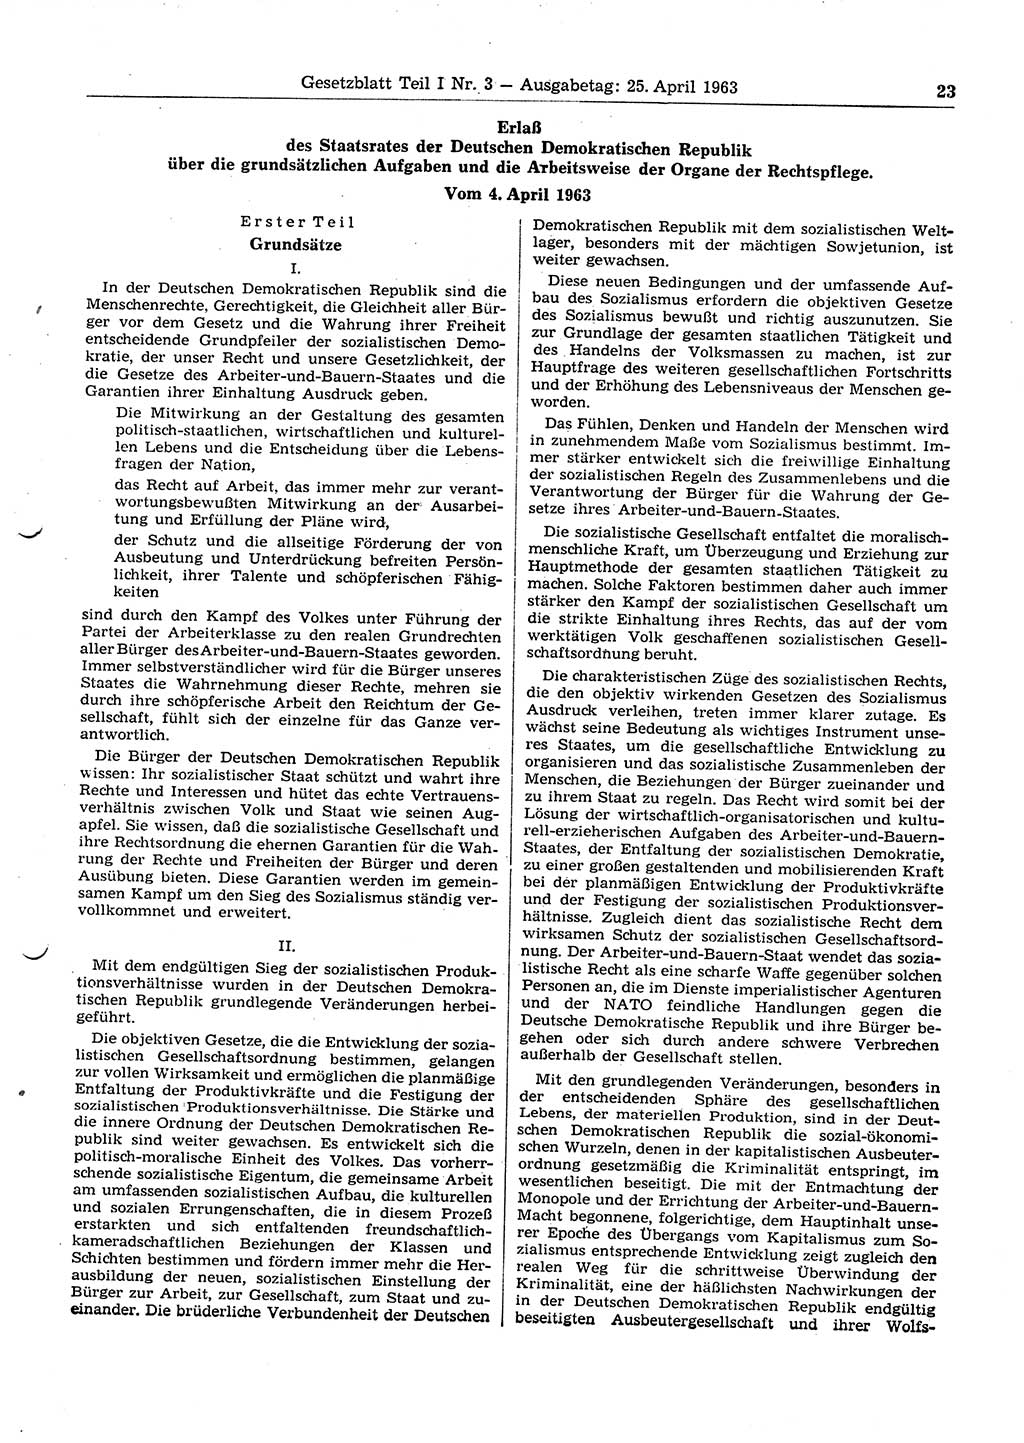 Gesetzblatt (GBl.) der Deutschen Demokratischen Republik (DDR) Teil Ⅰ 1963, Seite 23 (GBl. DDR Ⅰ 1963, S. 23)